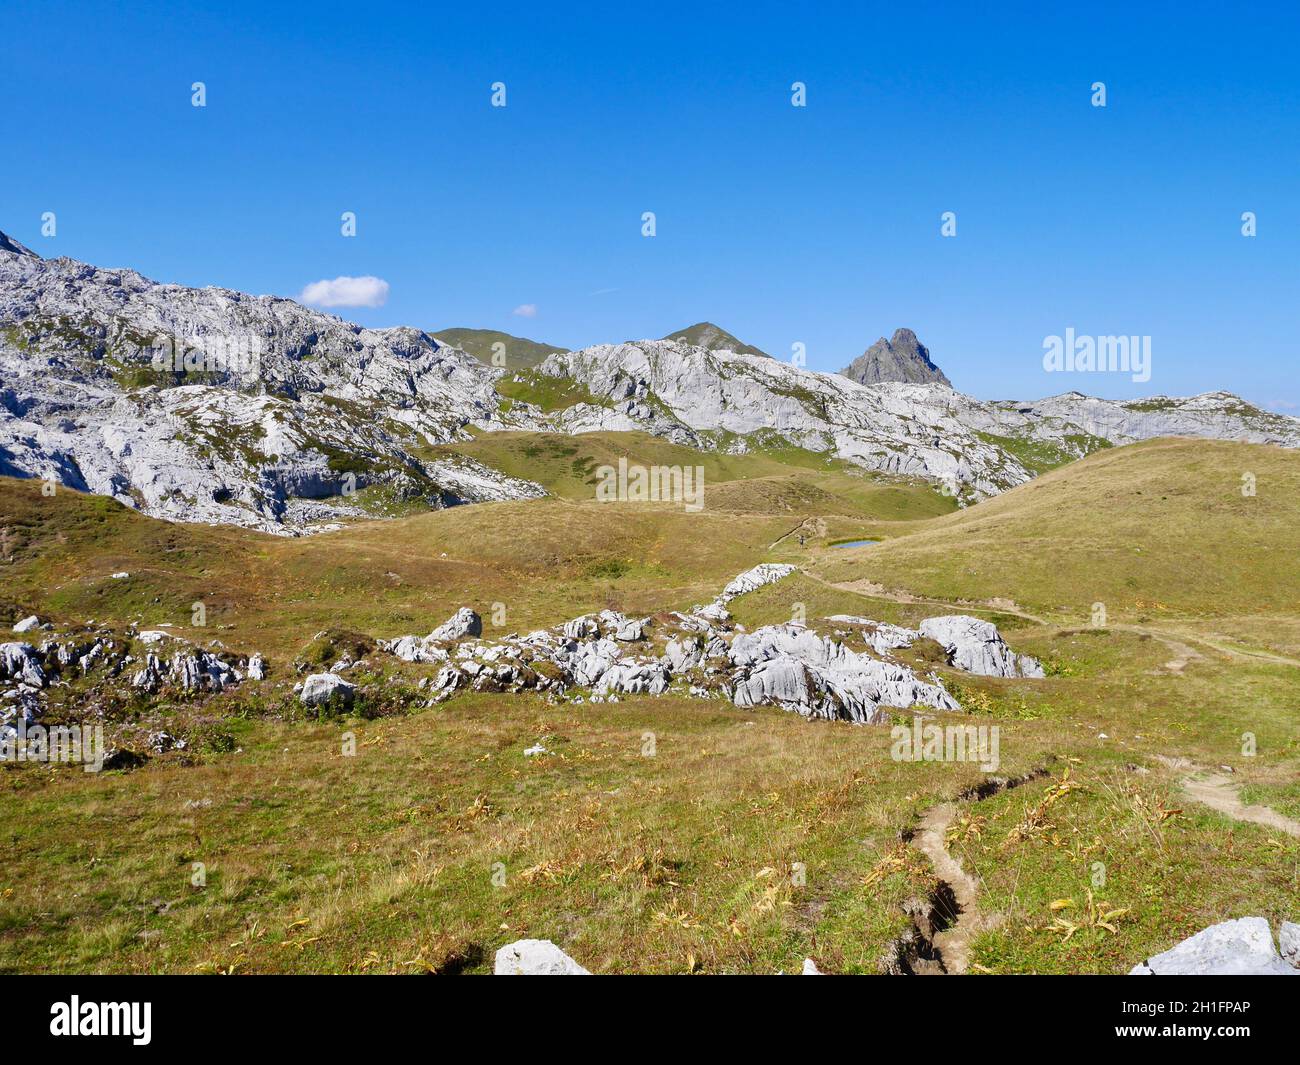 Hiking path winding through alpine landscape in Praettigau, Graubuenden, Switzerland. Stock Photo